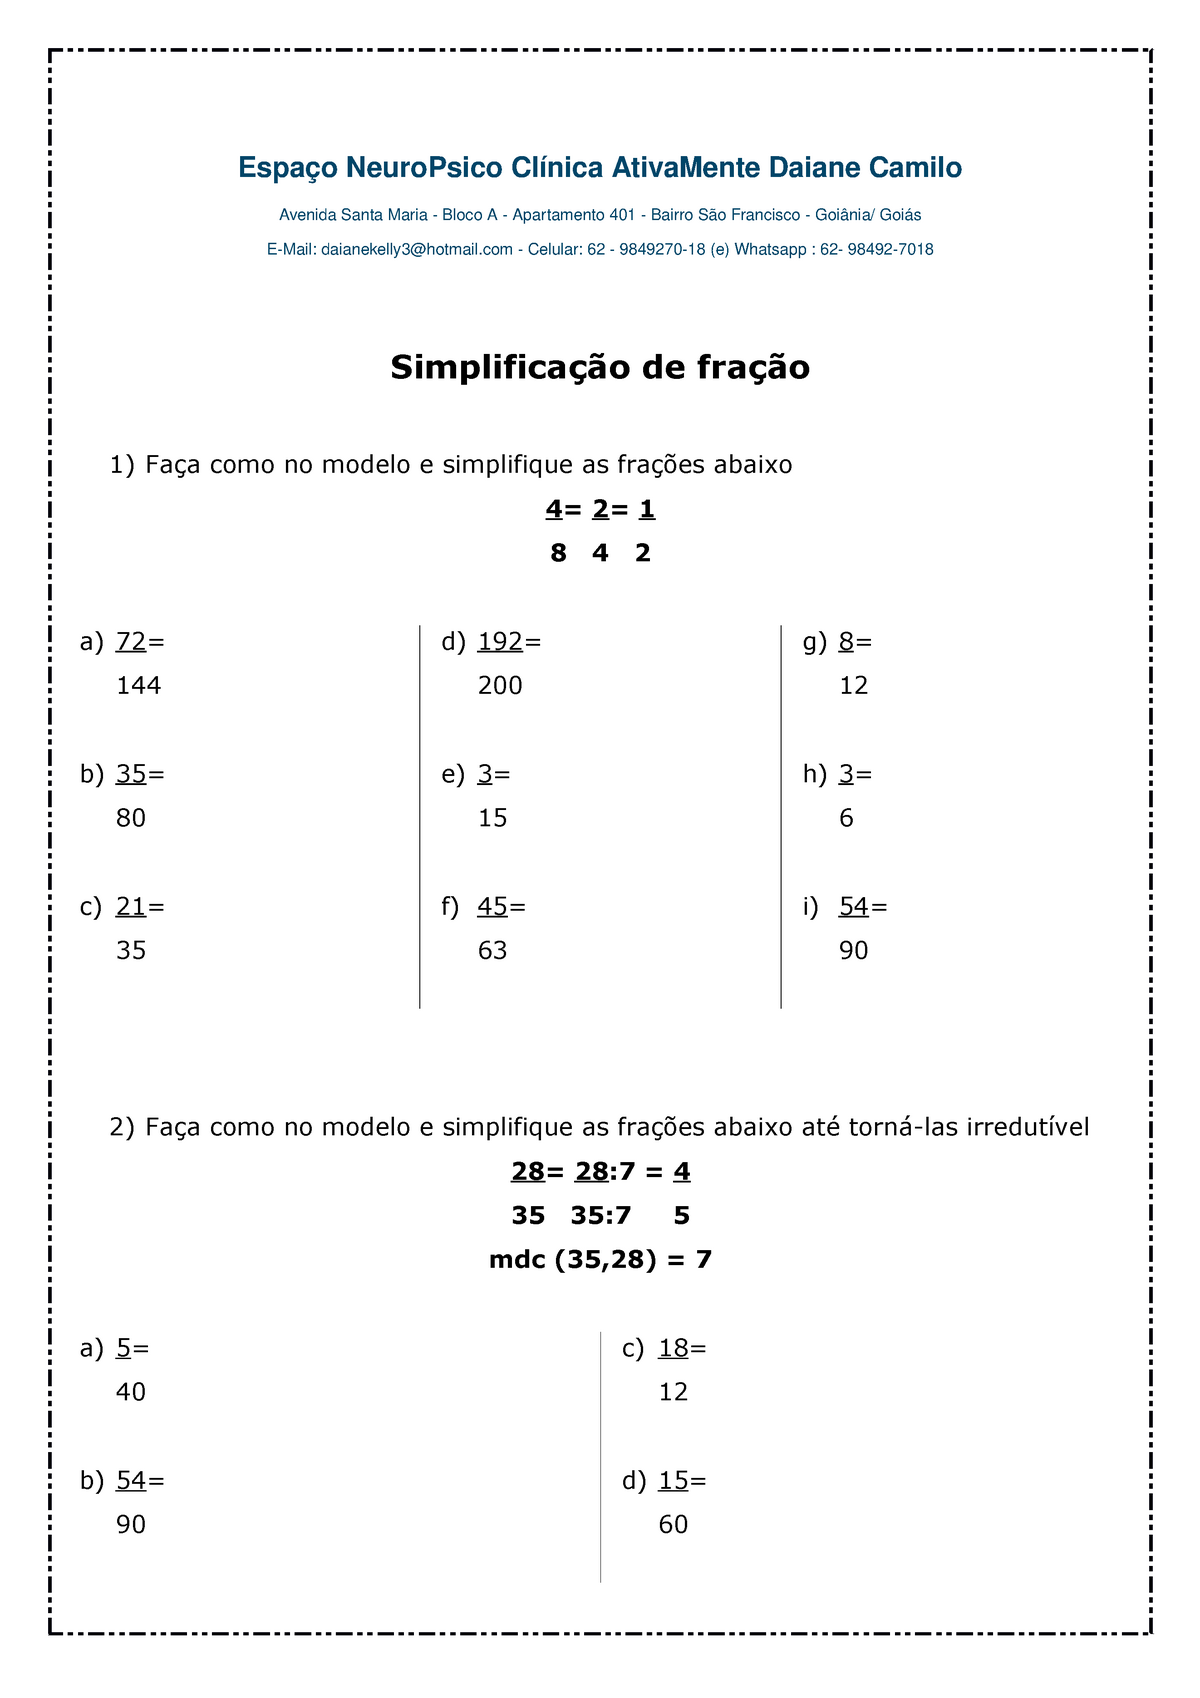 fgv simplificando a fração 3/4+1/3+2/5